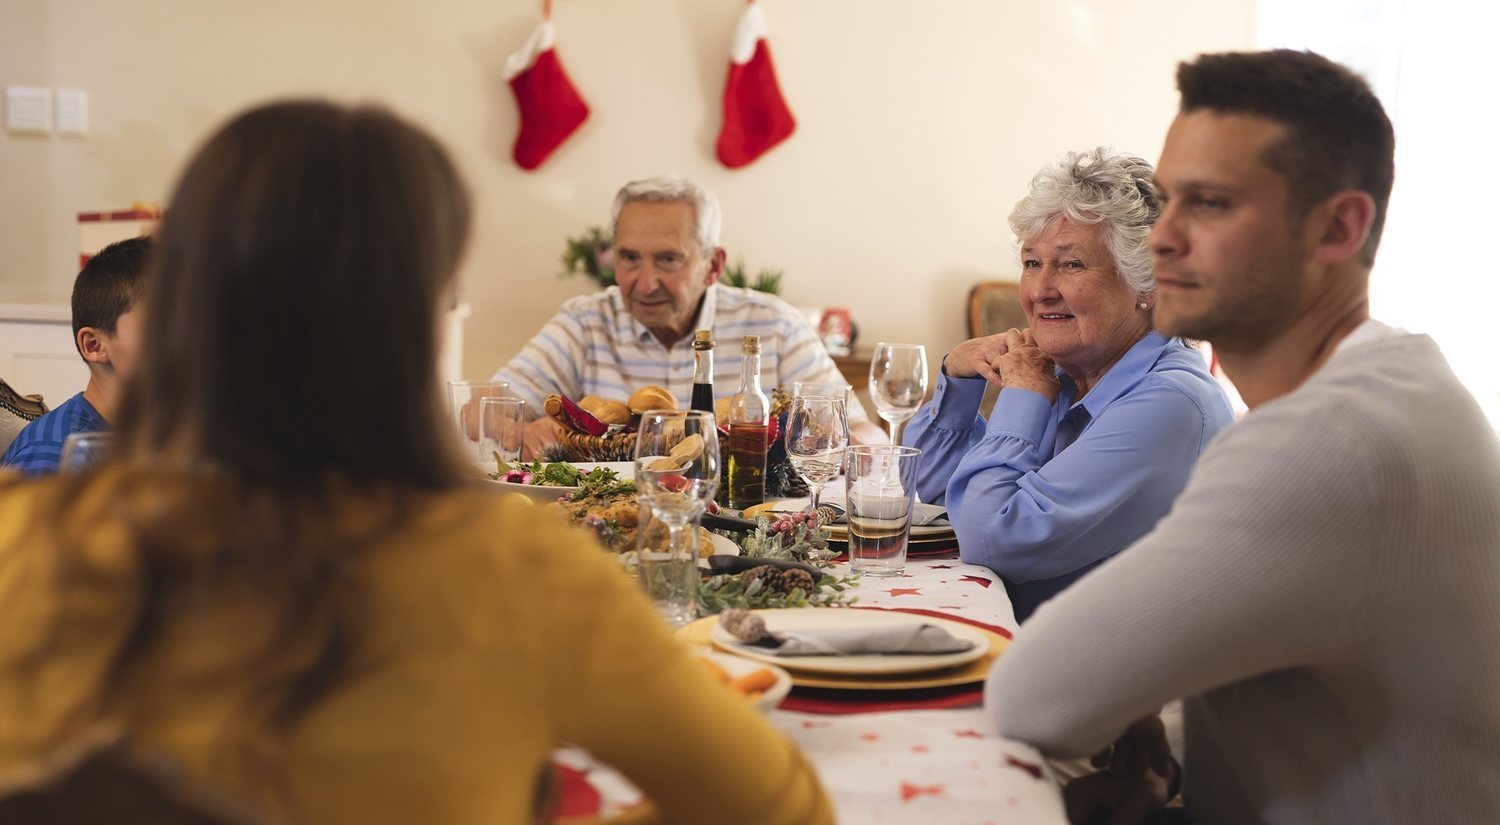 Presentar a tu pareja a la familia en Navidad, el reto del año